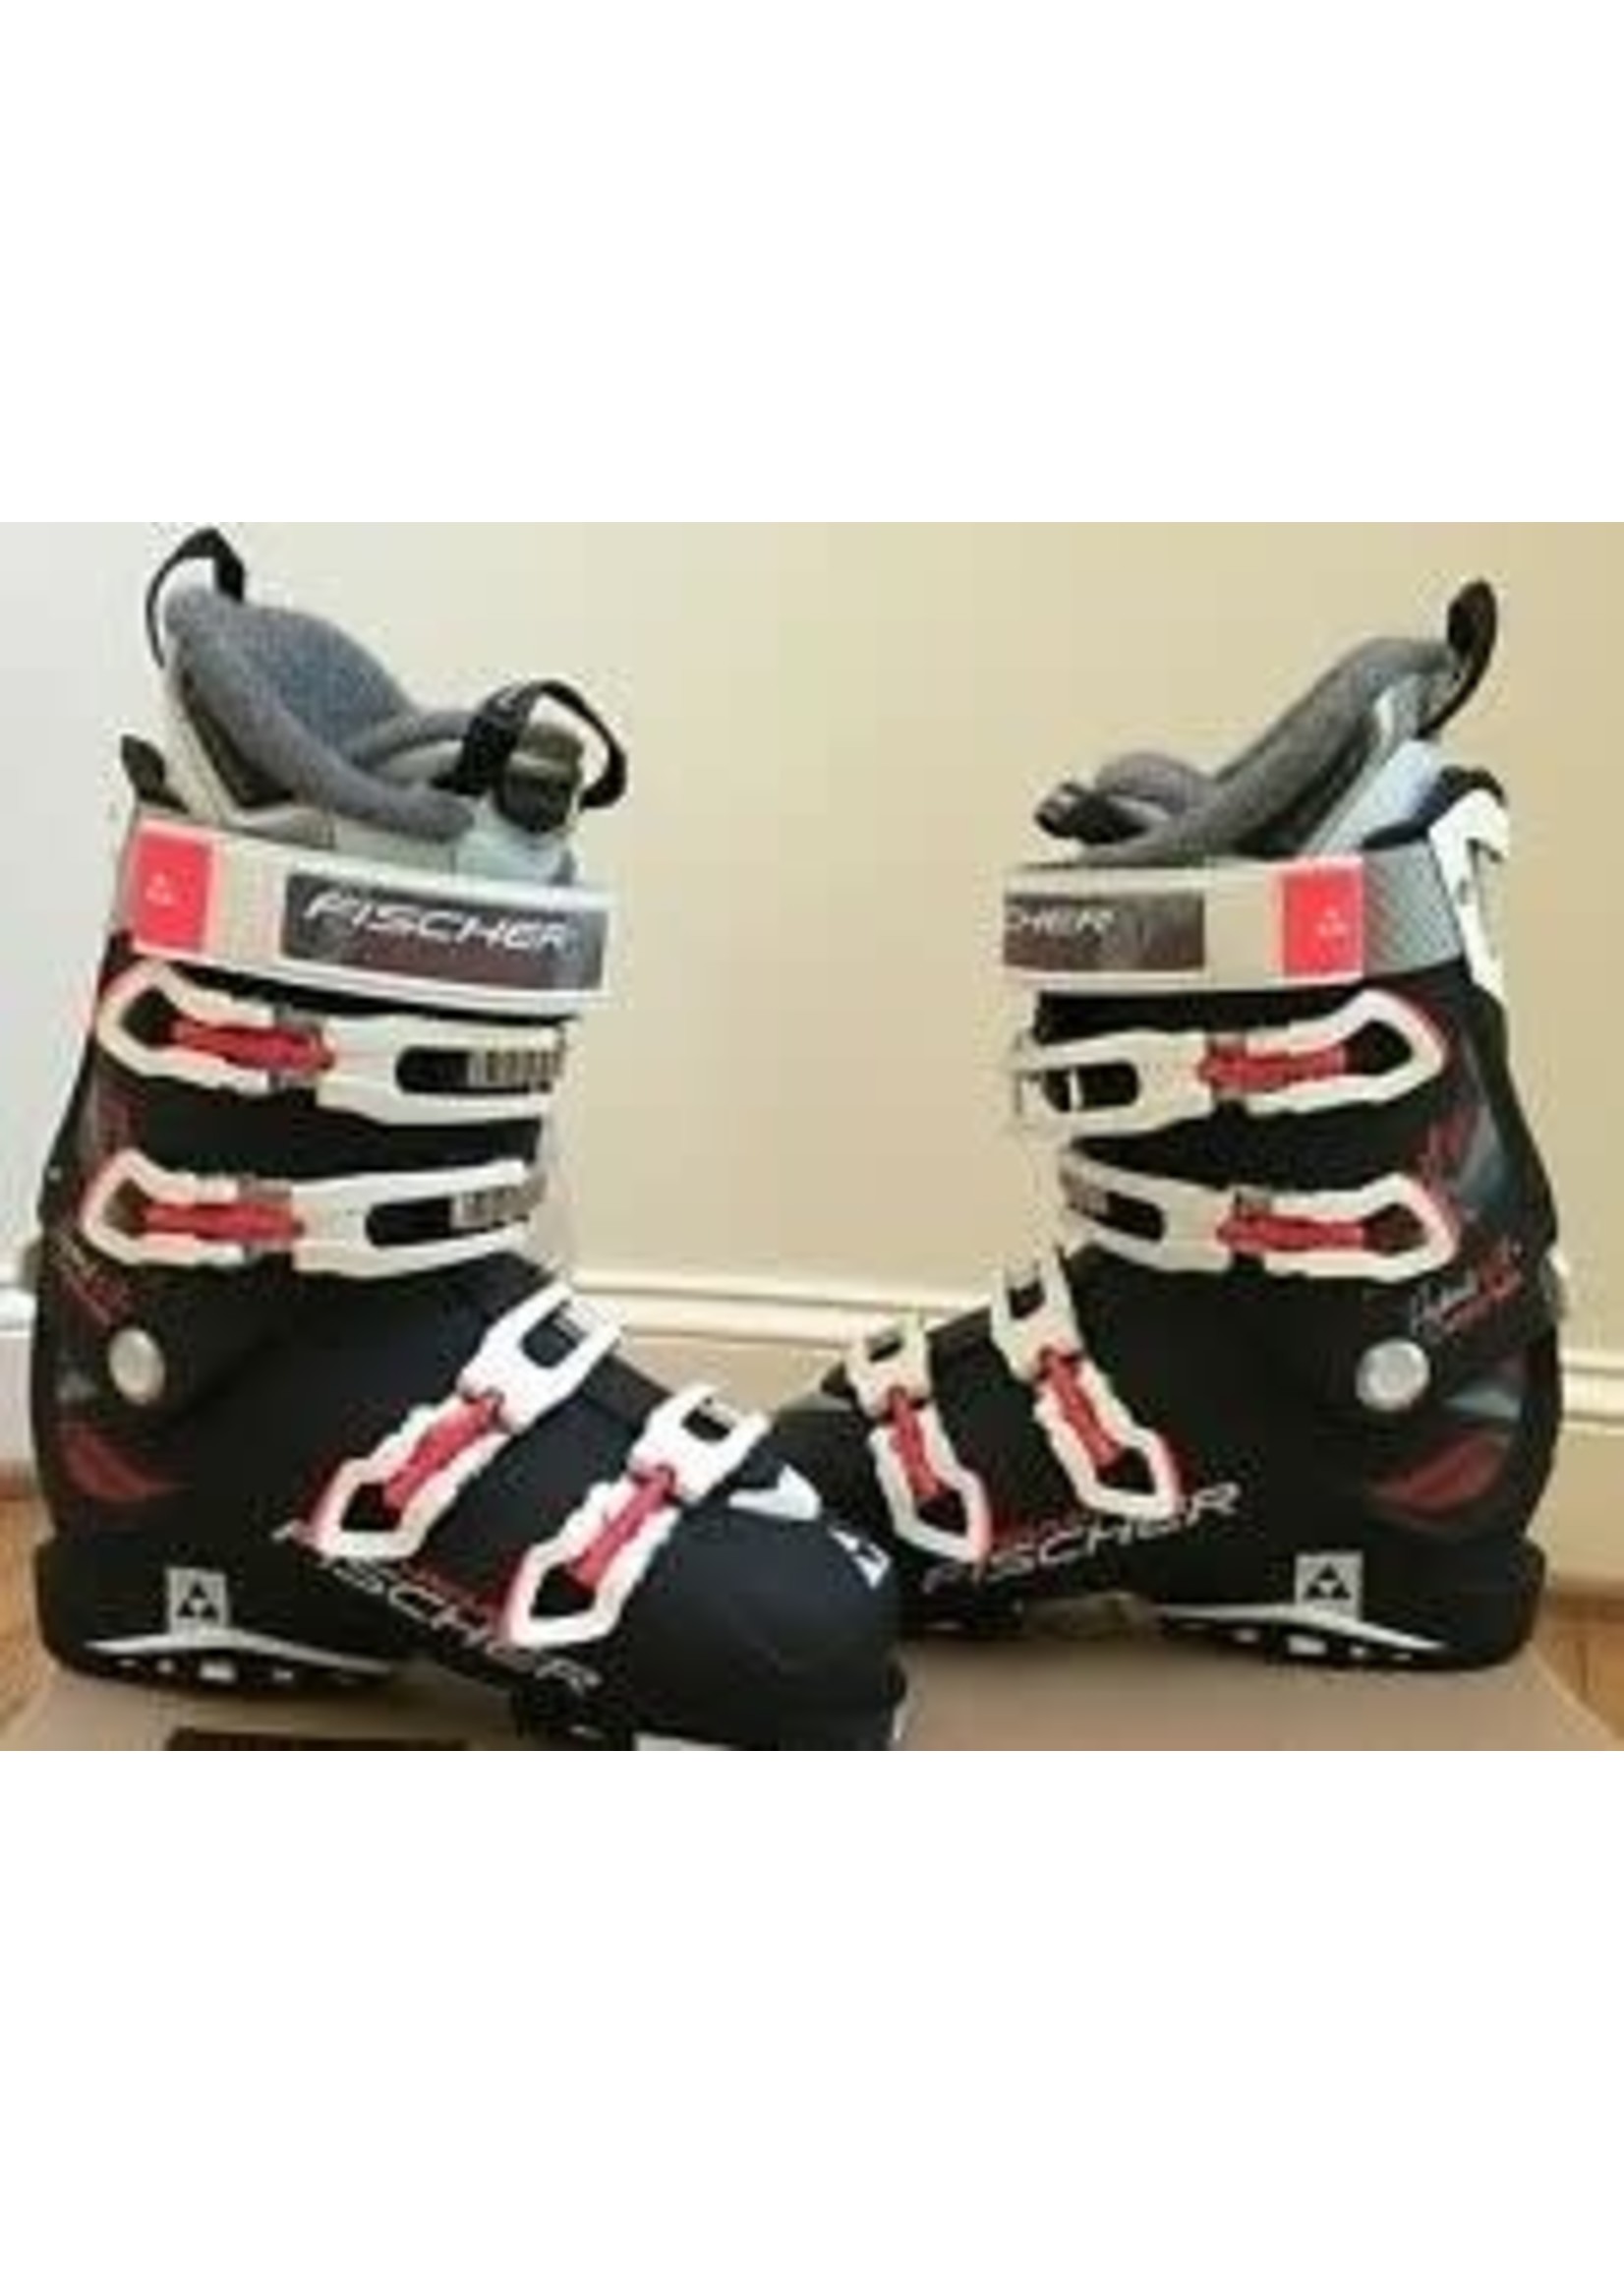 Fischer Fischer Hybrid W 8+ Vacuum Full Fit Black/Black 23.5 Ski Boots